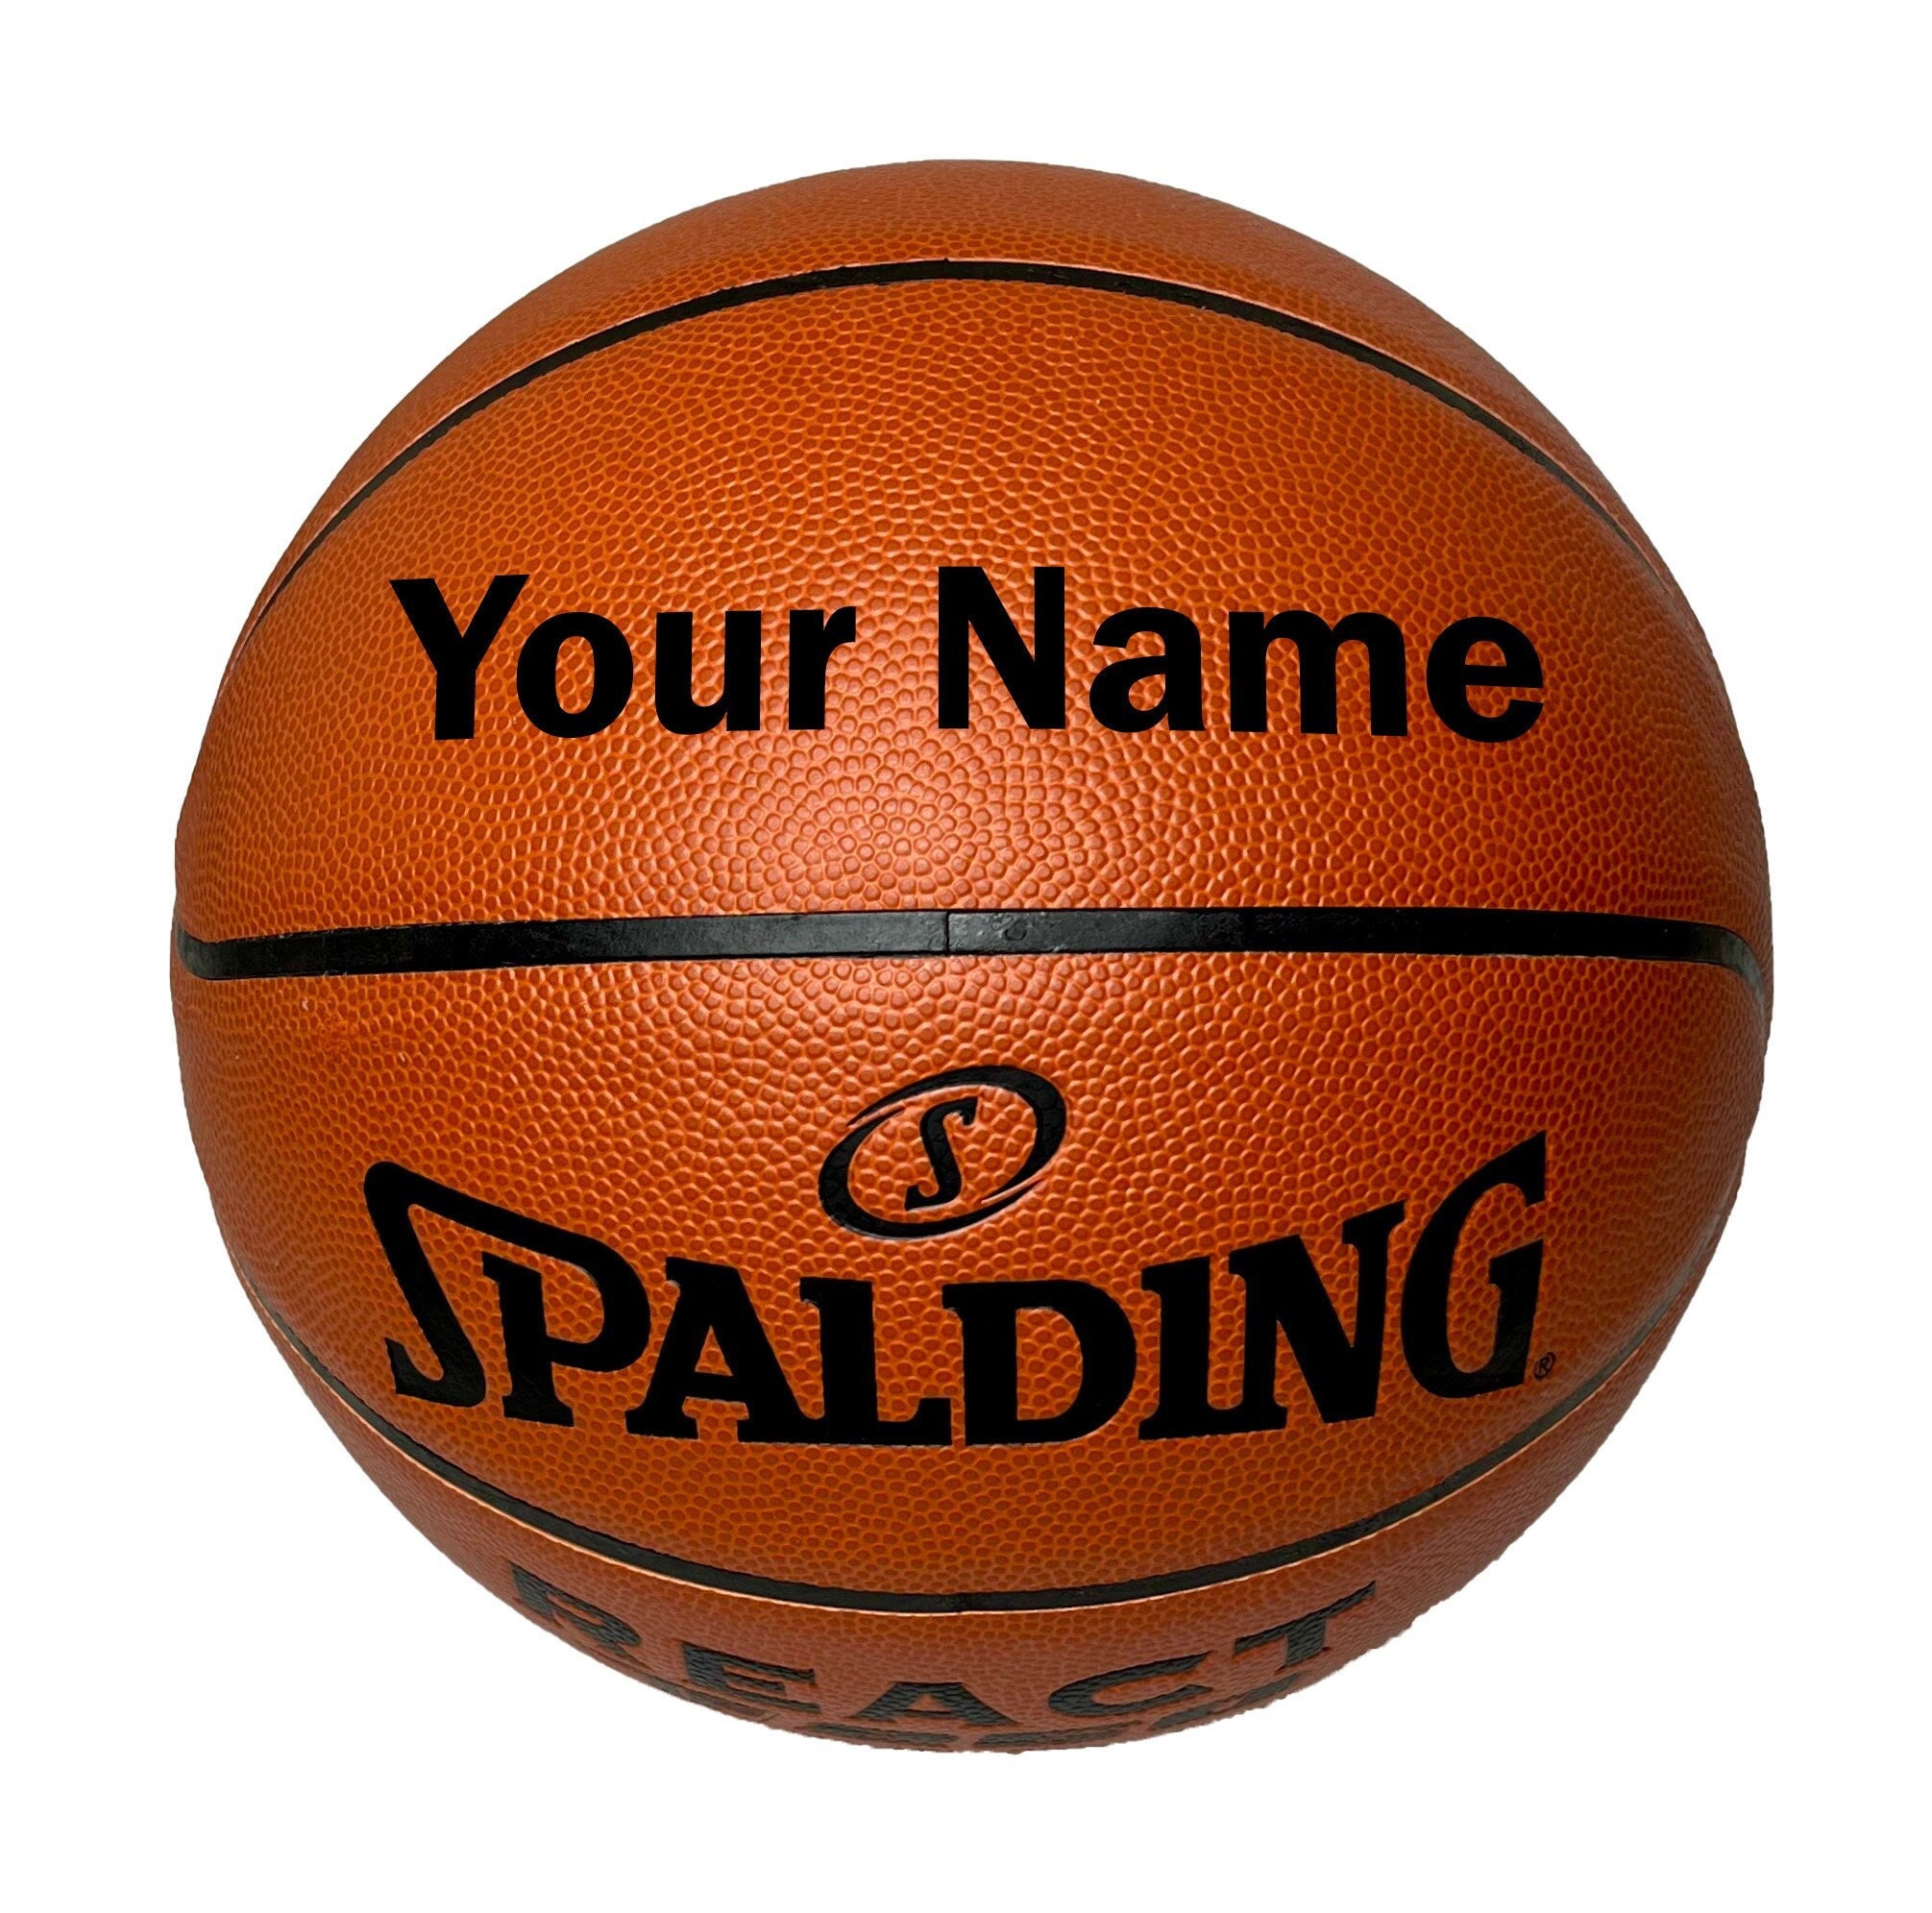 Ballon de basketball 3x3 Taille - Ballon 6